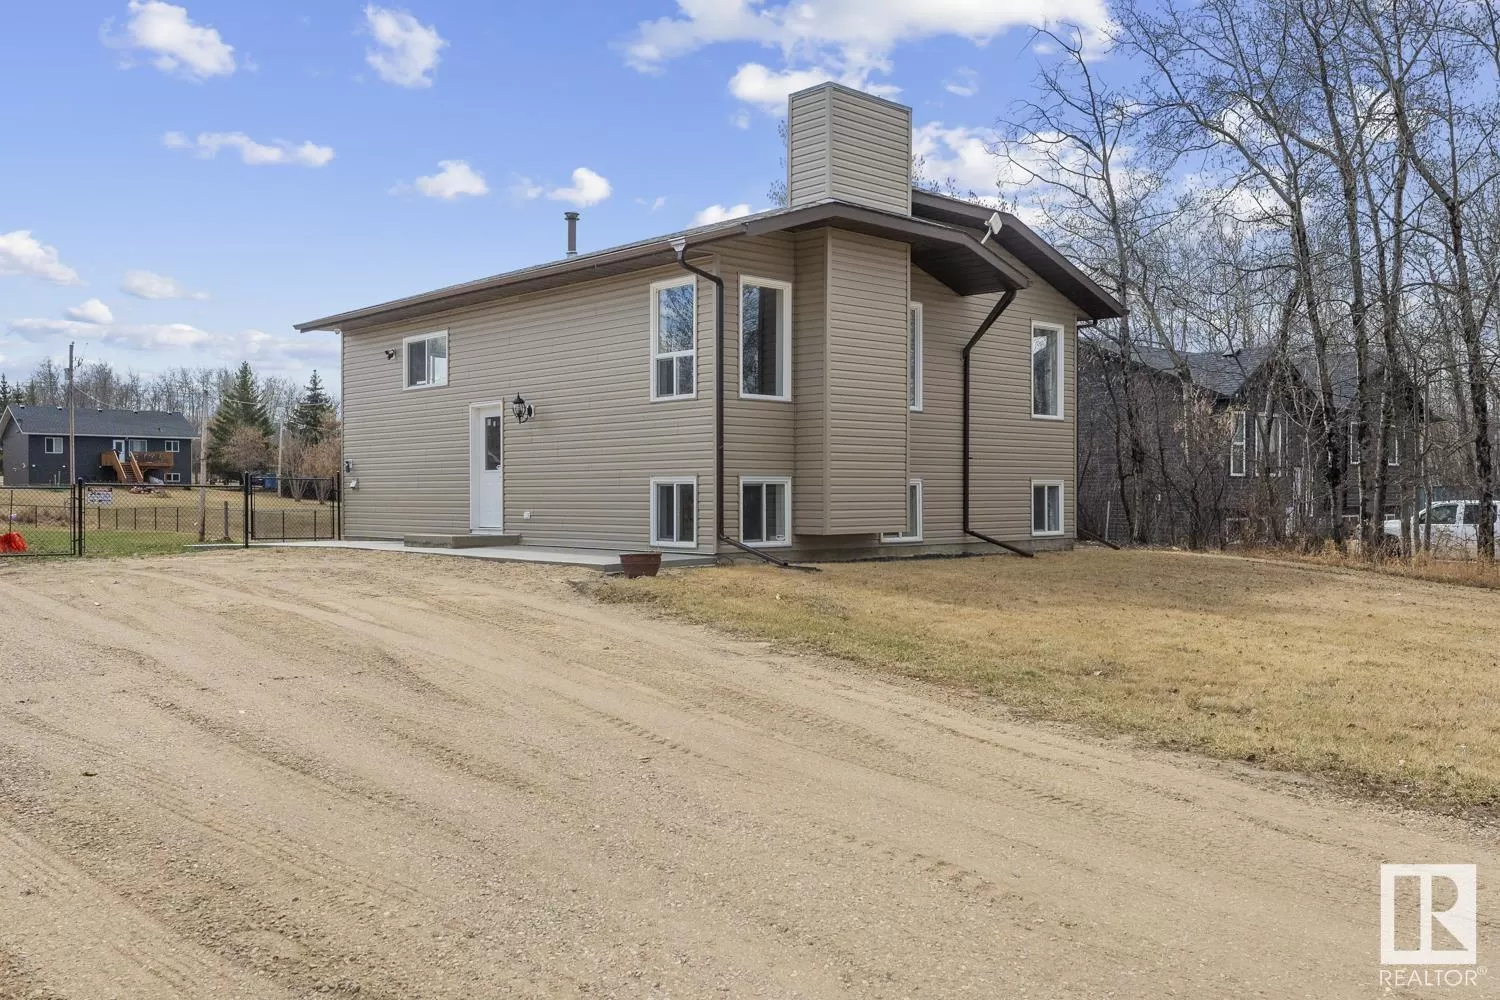 House for rent: #444 46410 Twp Rd 610, Rural Bonnyville M.D., Alberta T9N 2G6